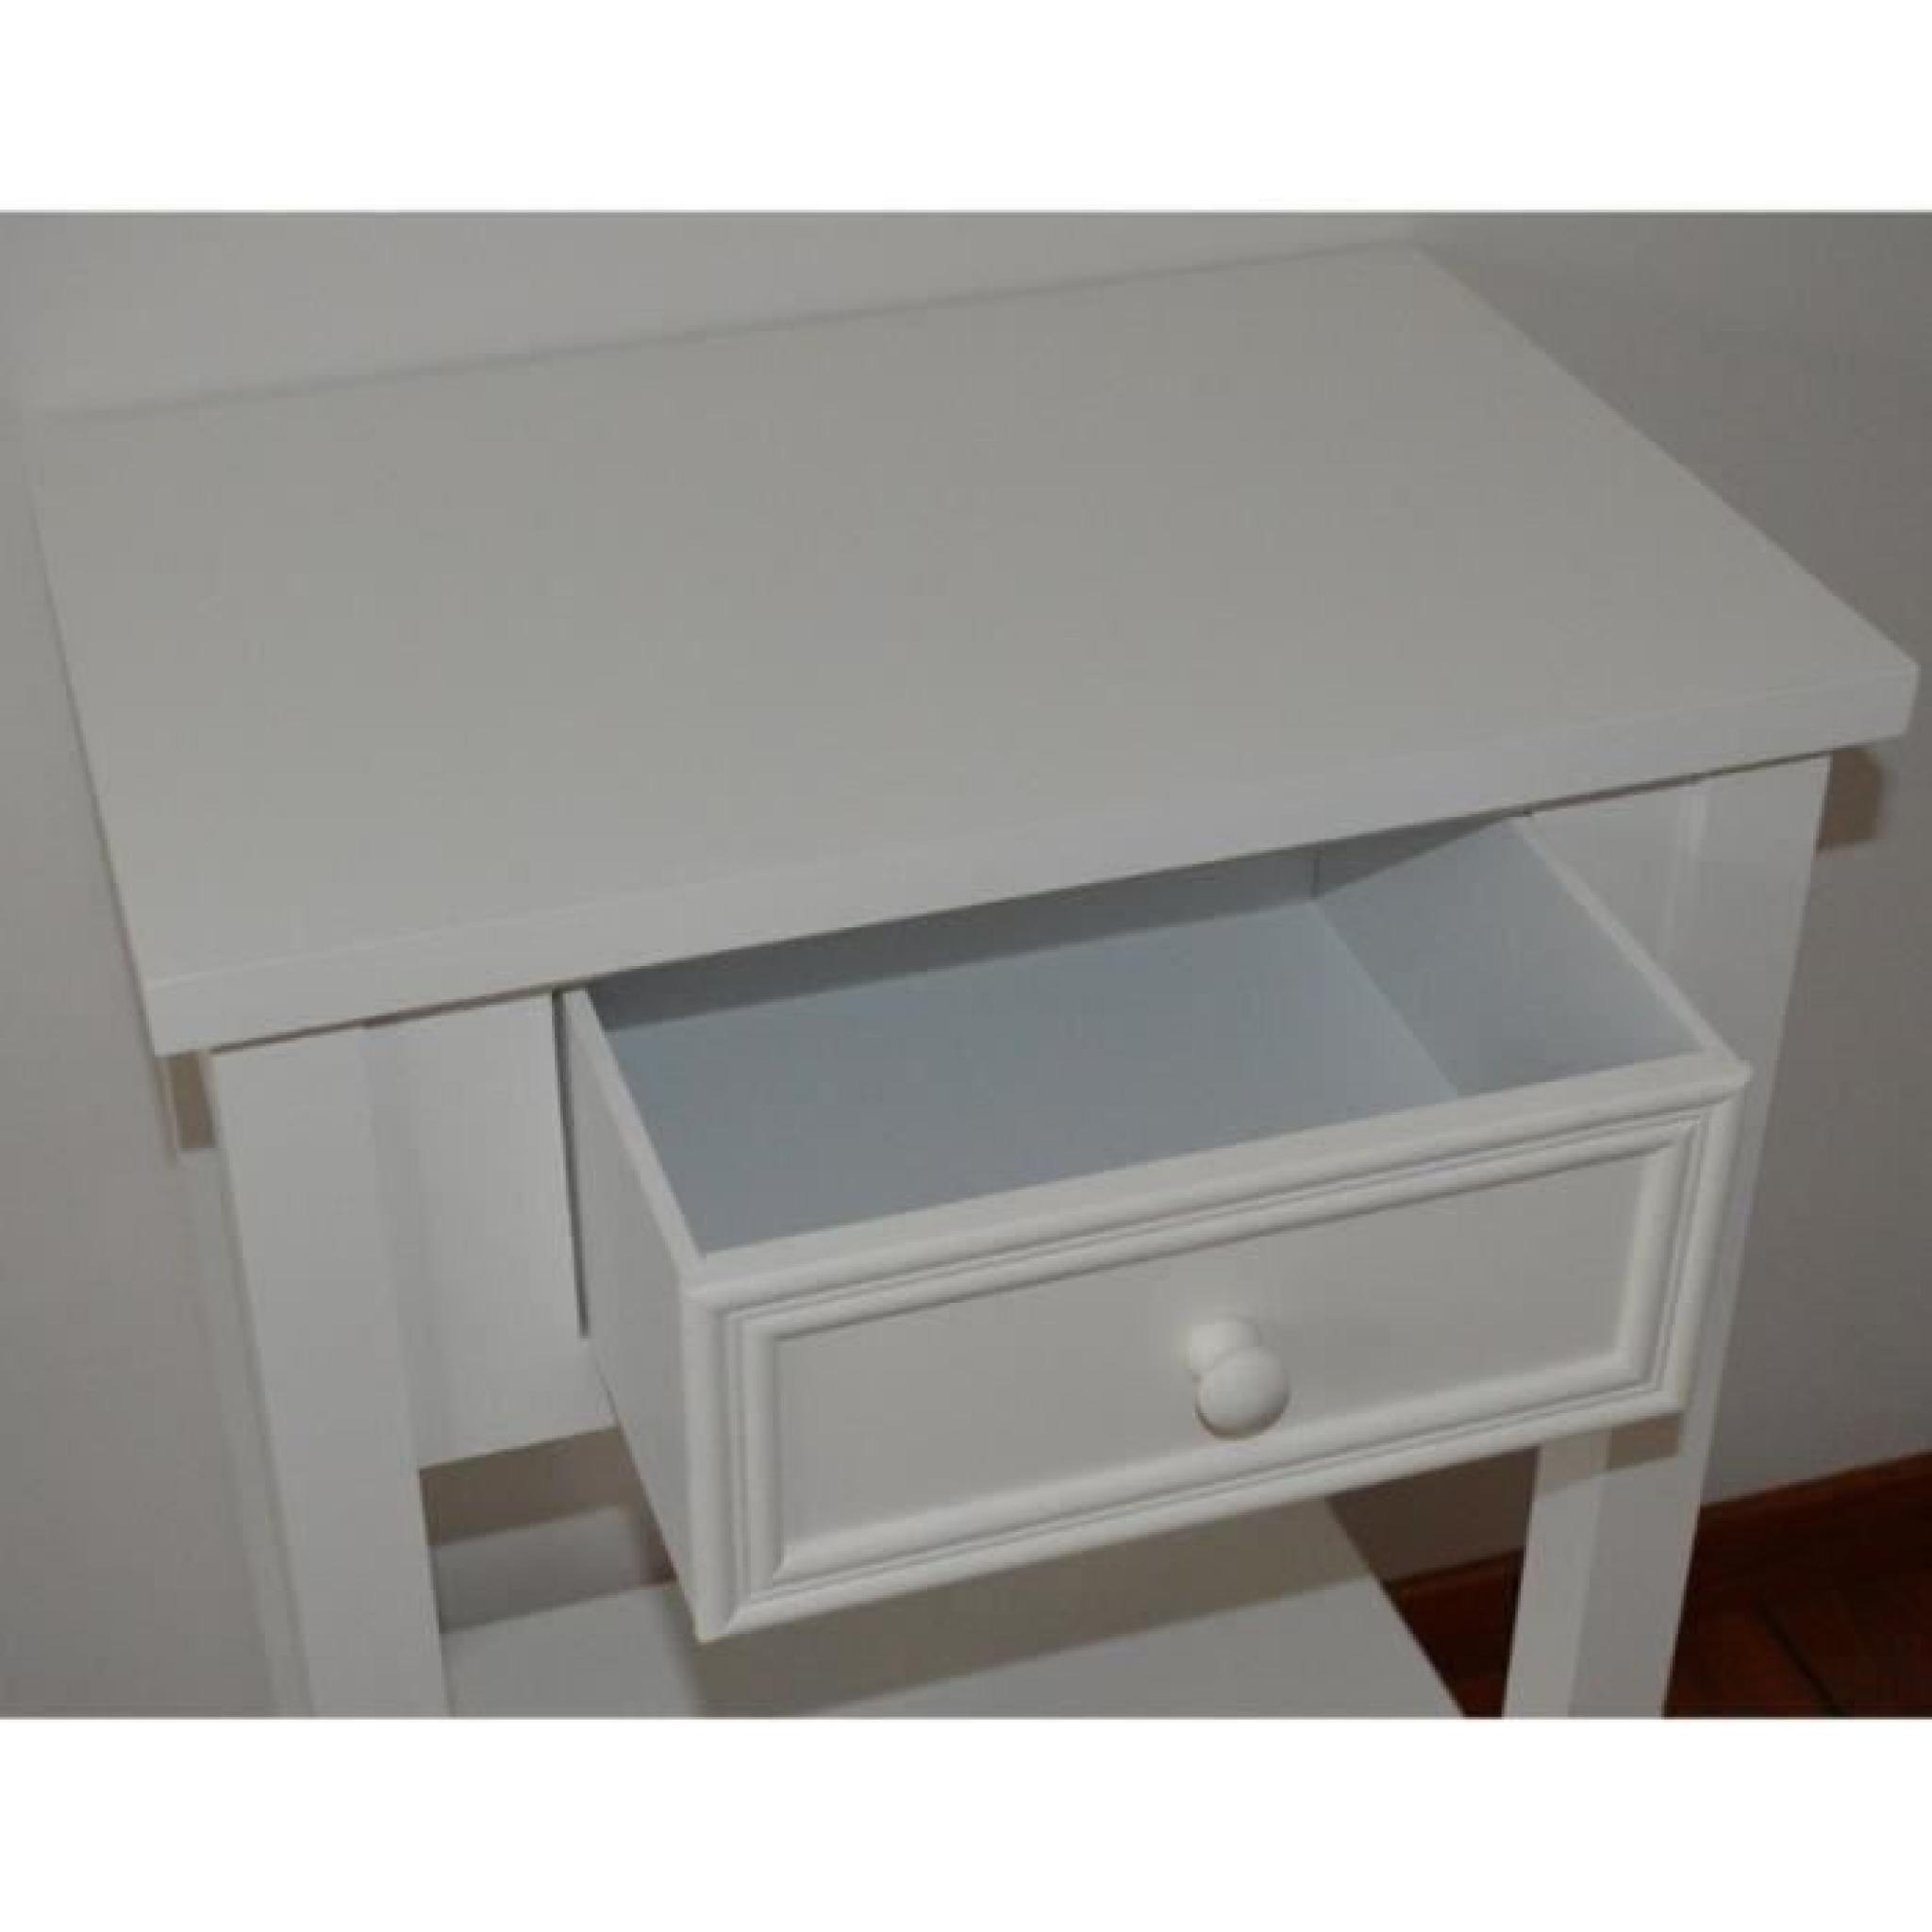 Table de chevet en bois 1 tiroir blanc, H67 x L45 x P30 cm pas cher